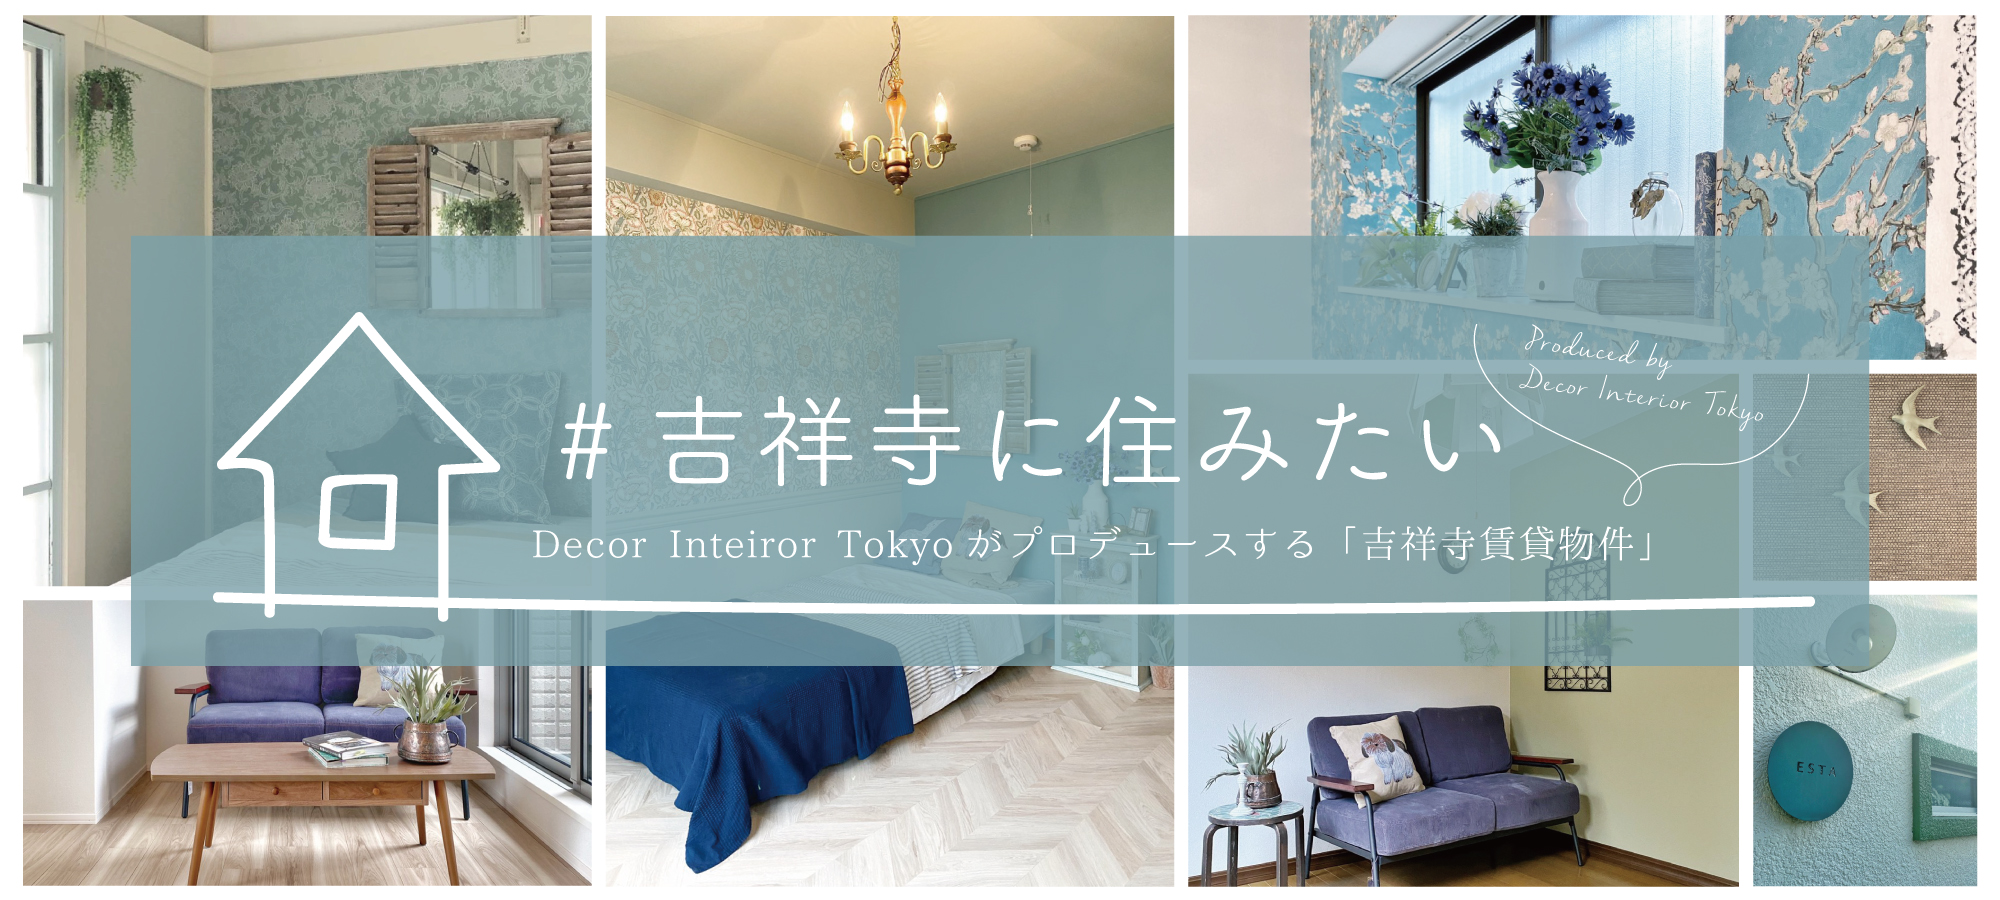 #吉祥寺に住みたいーDecor Interior Tokyoがプロデュースするお部屋紹介 第3弾〜年末特大号